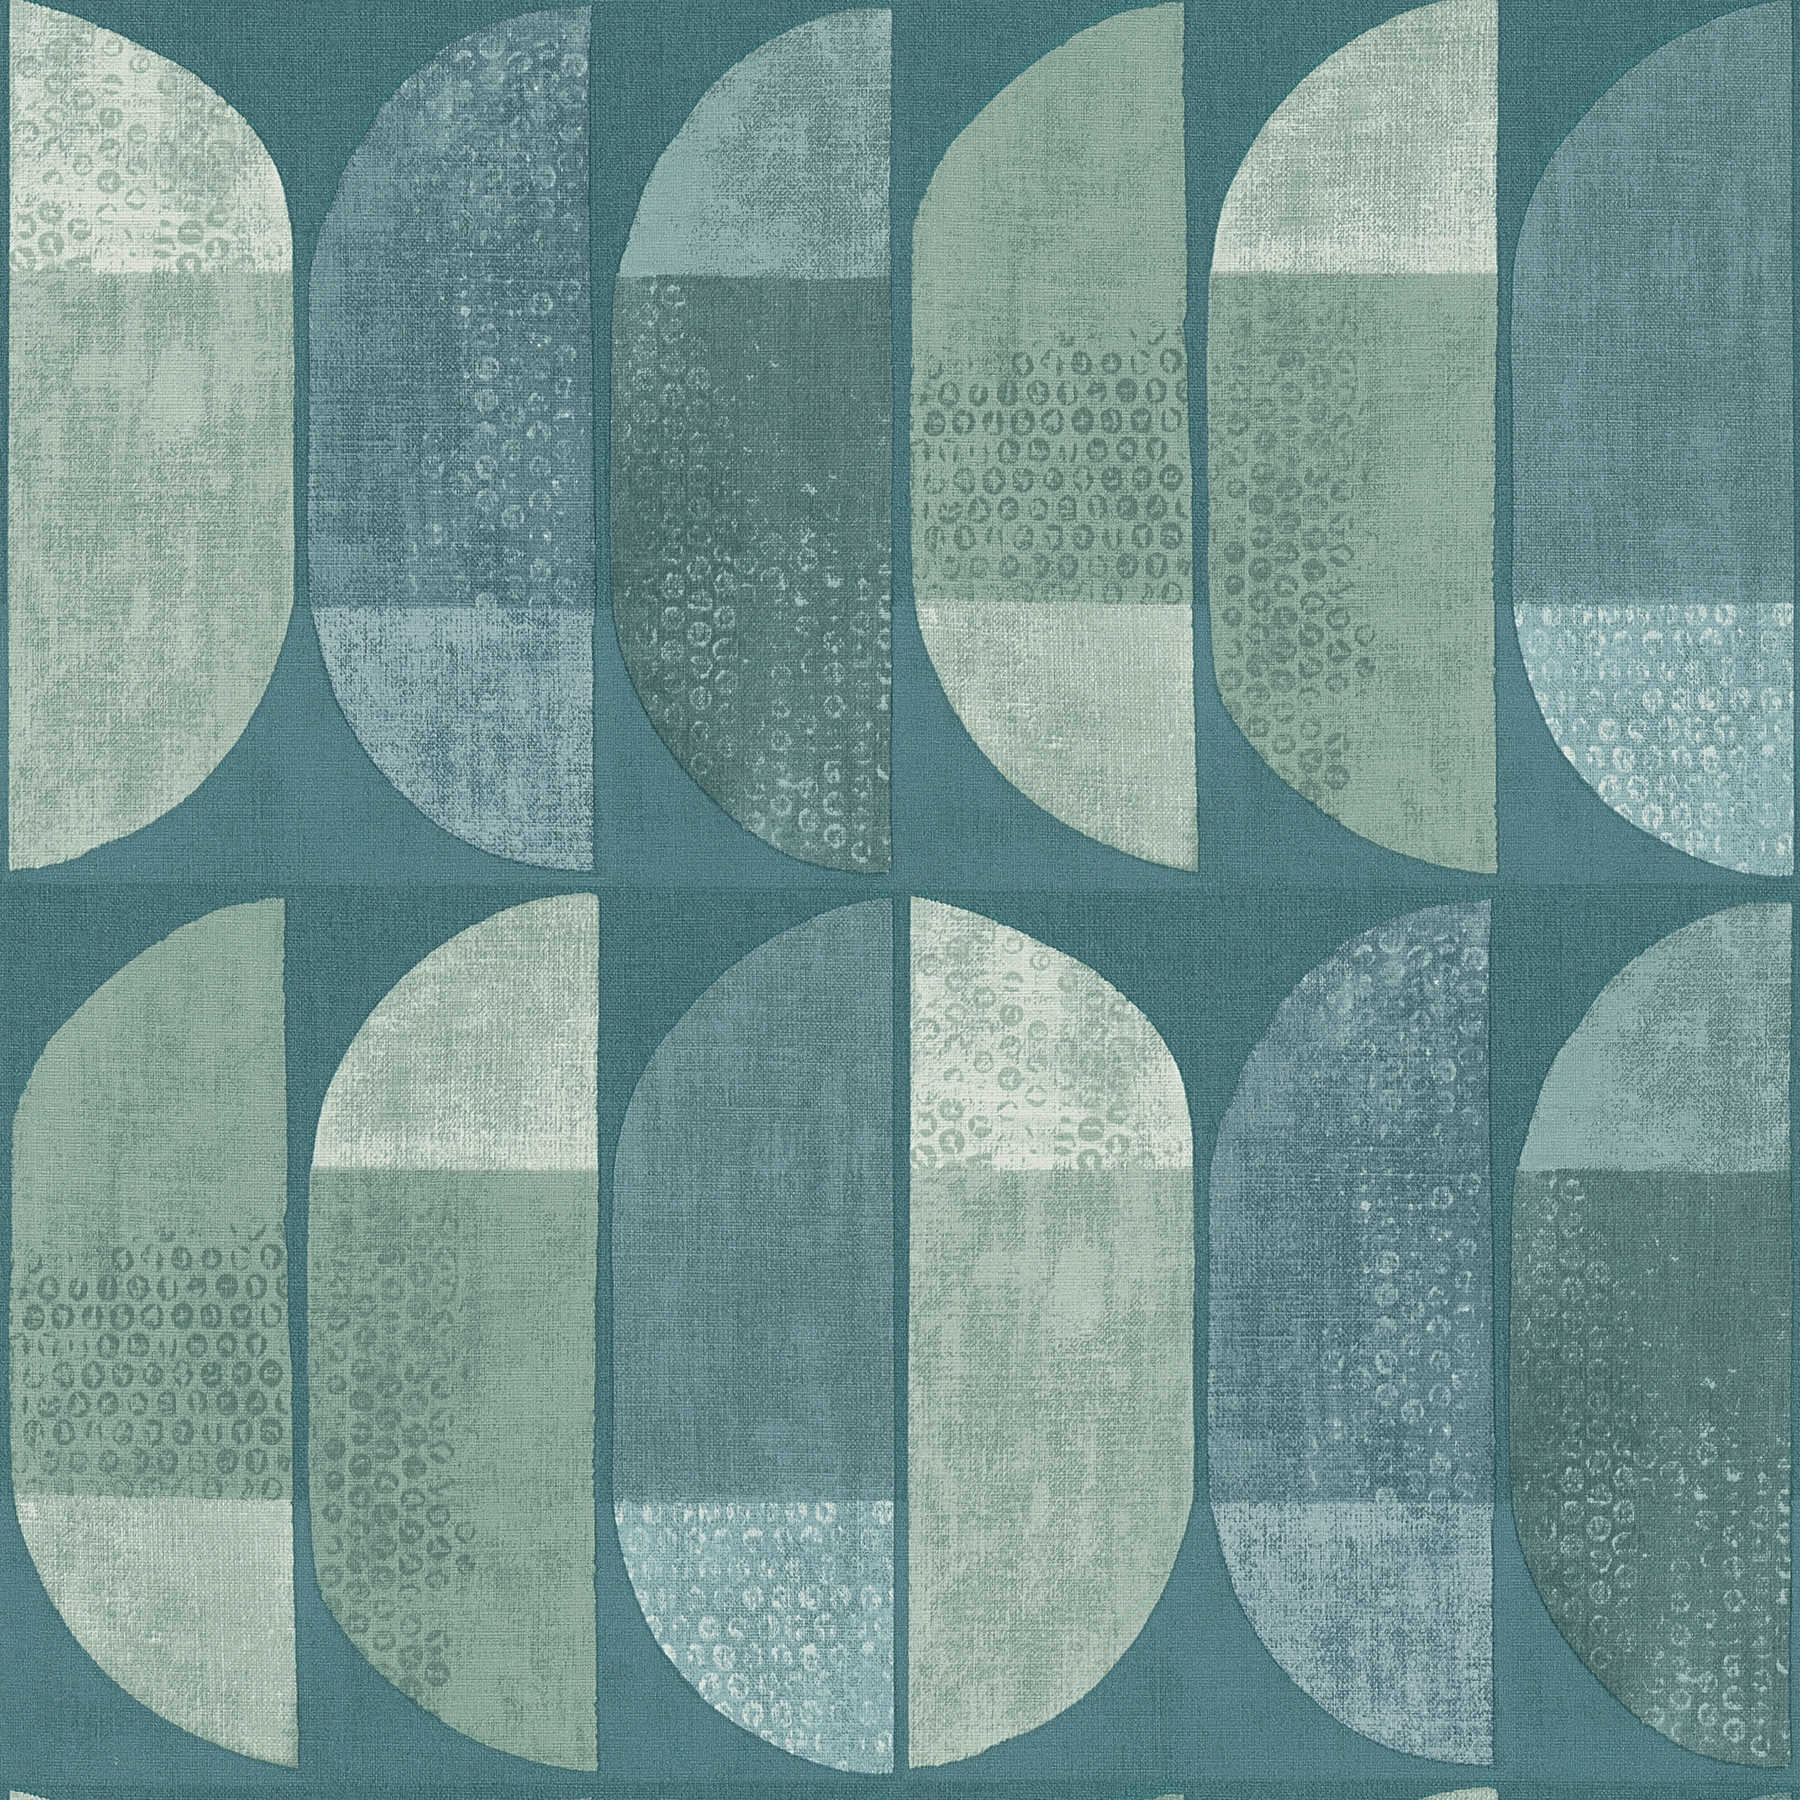 Papier peint motif géométrique rétro, style scandinave - bleu, vert
